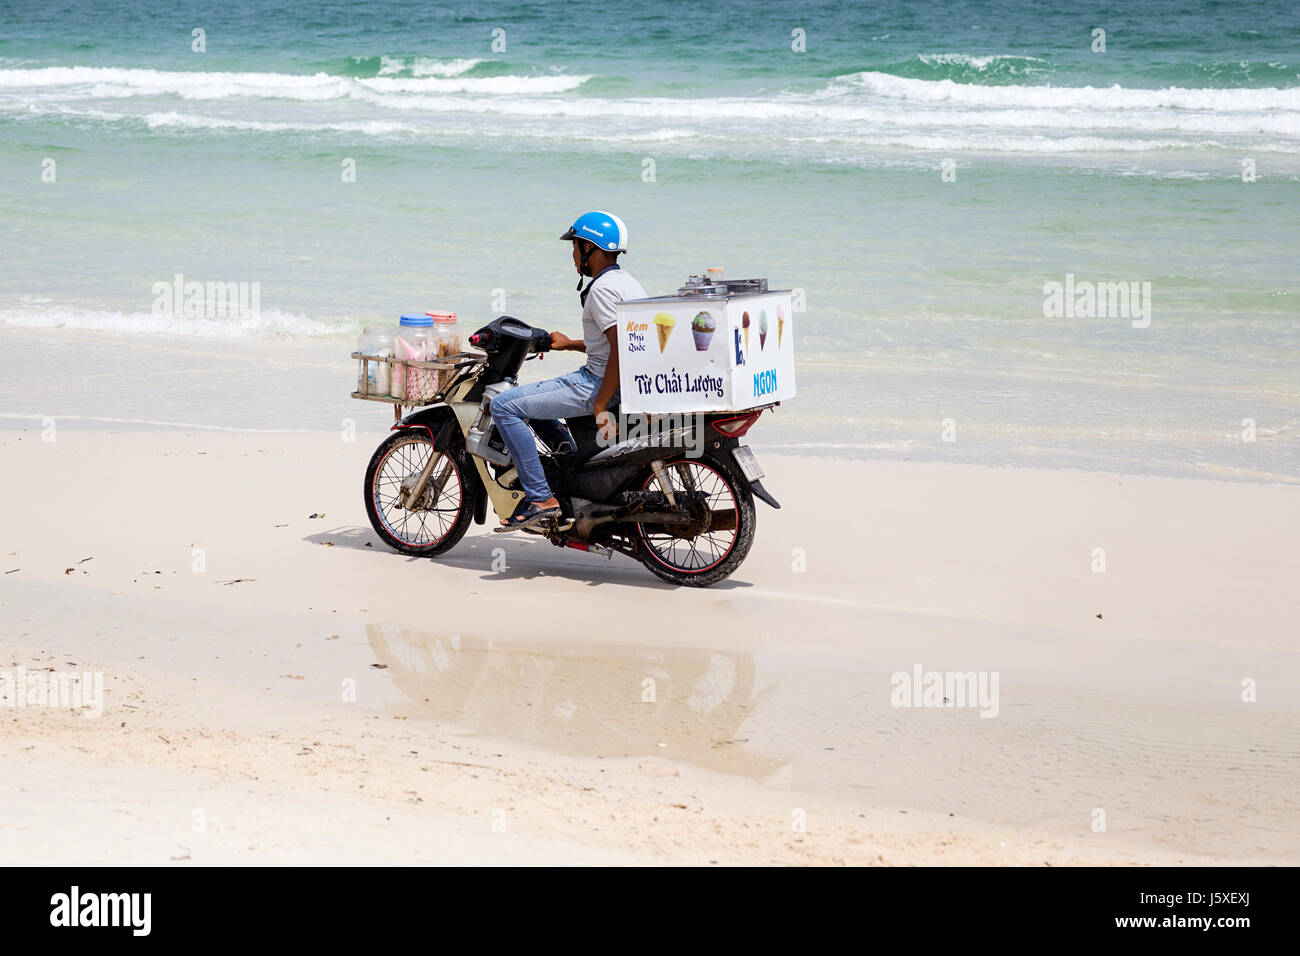 SAO BEACH, VIETNAM - 28 febbraio 2017: l'uomo non identificato sulla motocicletta sulla spiaggia Sao in Vietnam. Sao beach è una delle migliori spiagge del Vietnam. Foto Stock